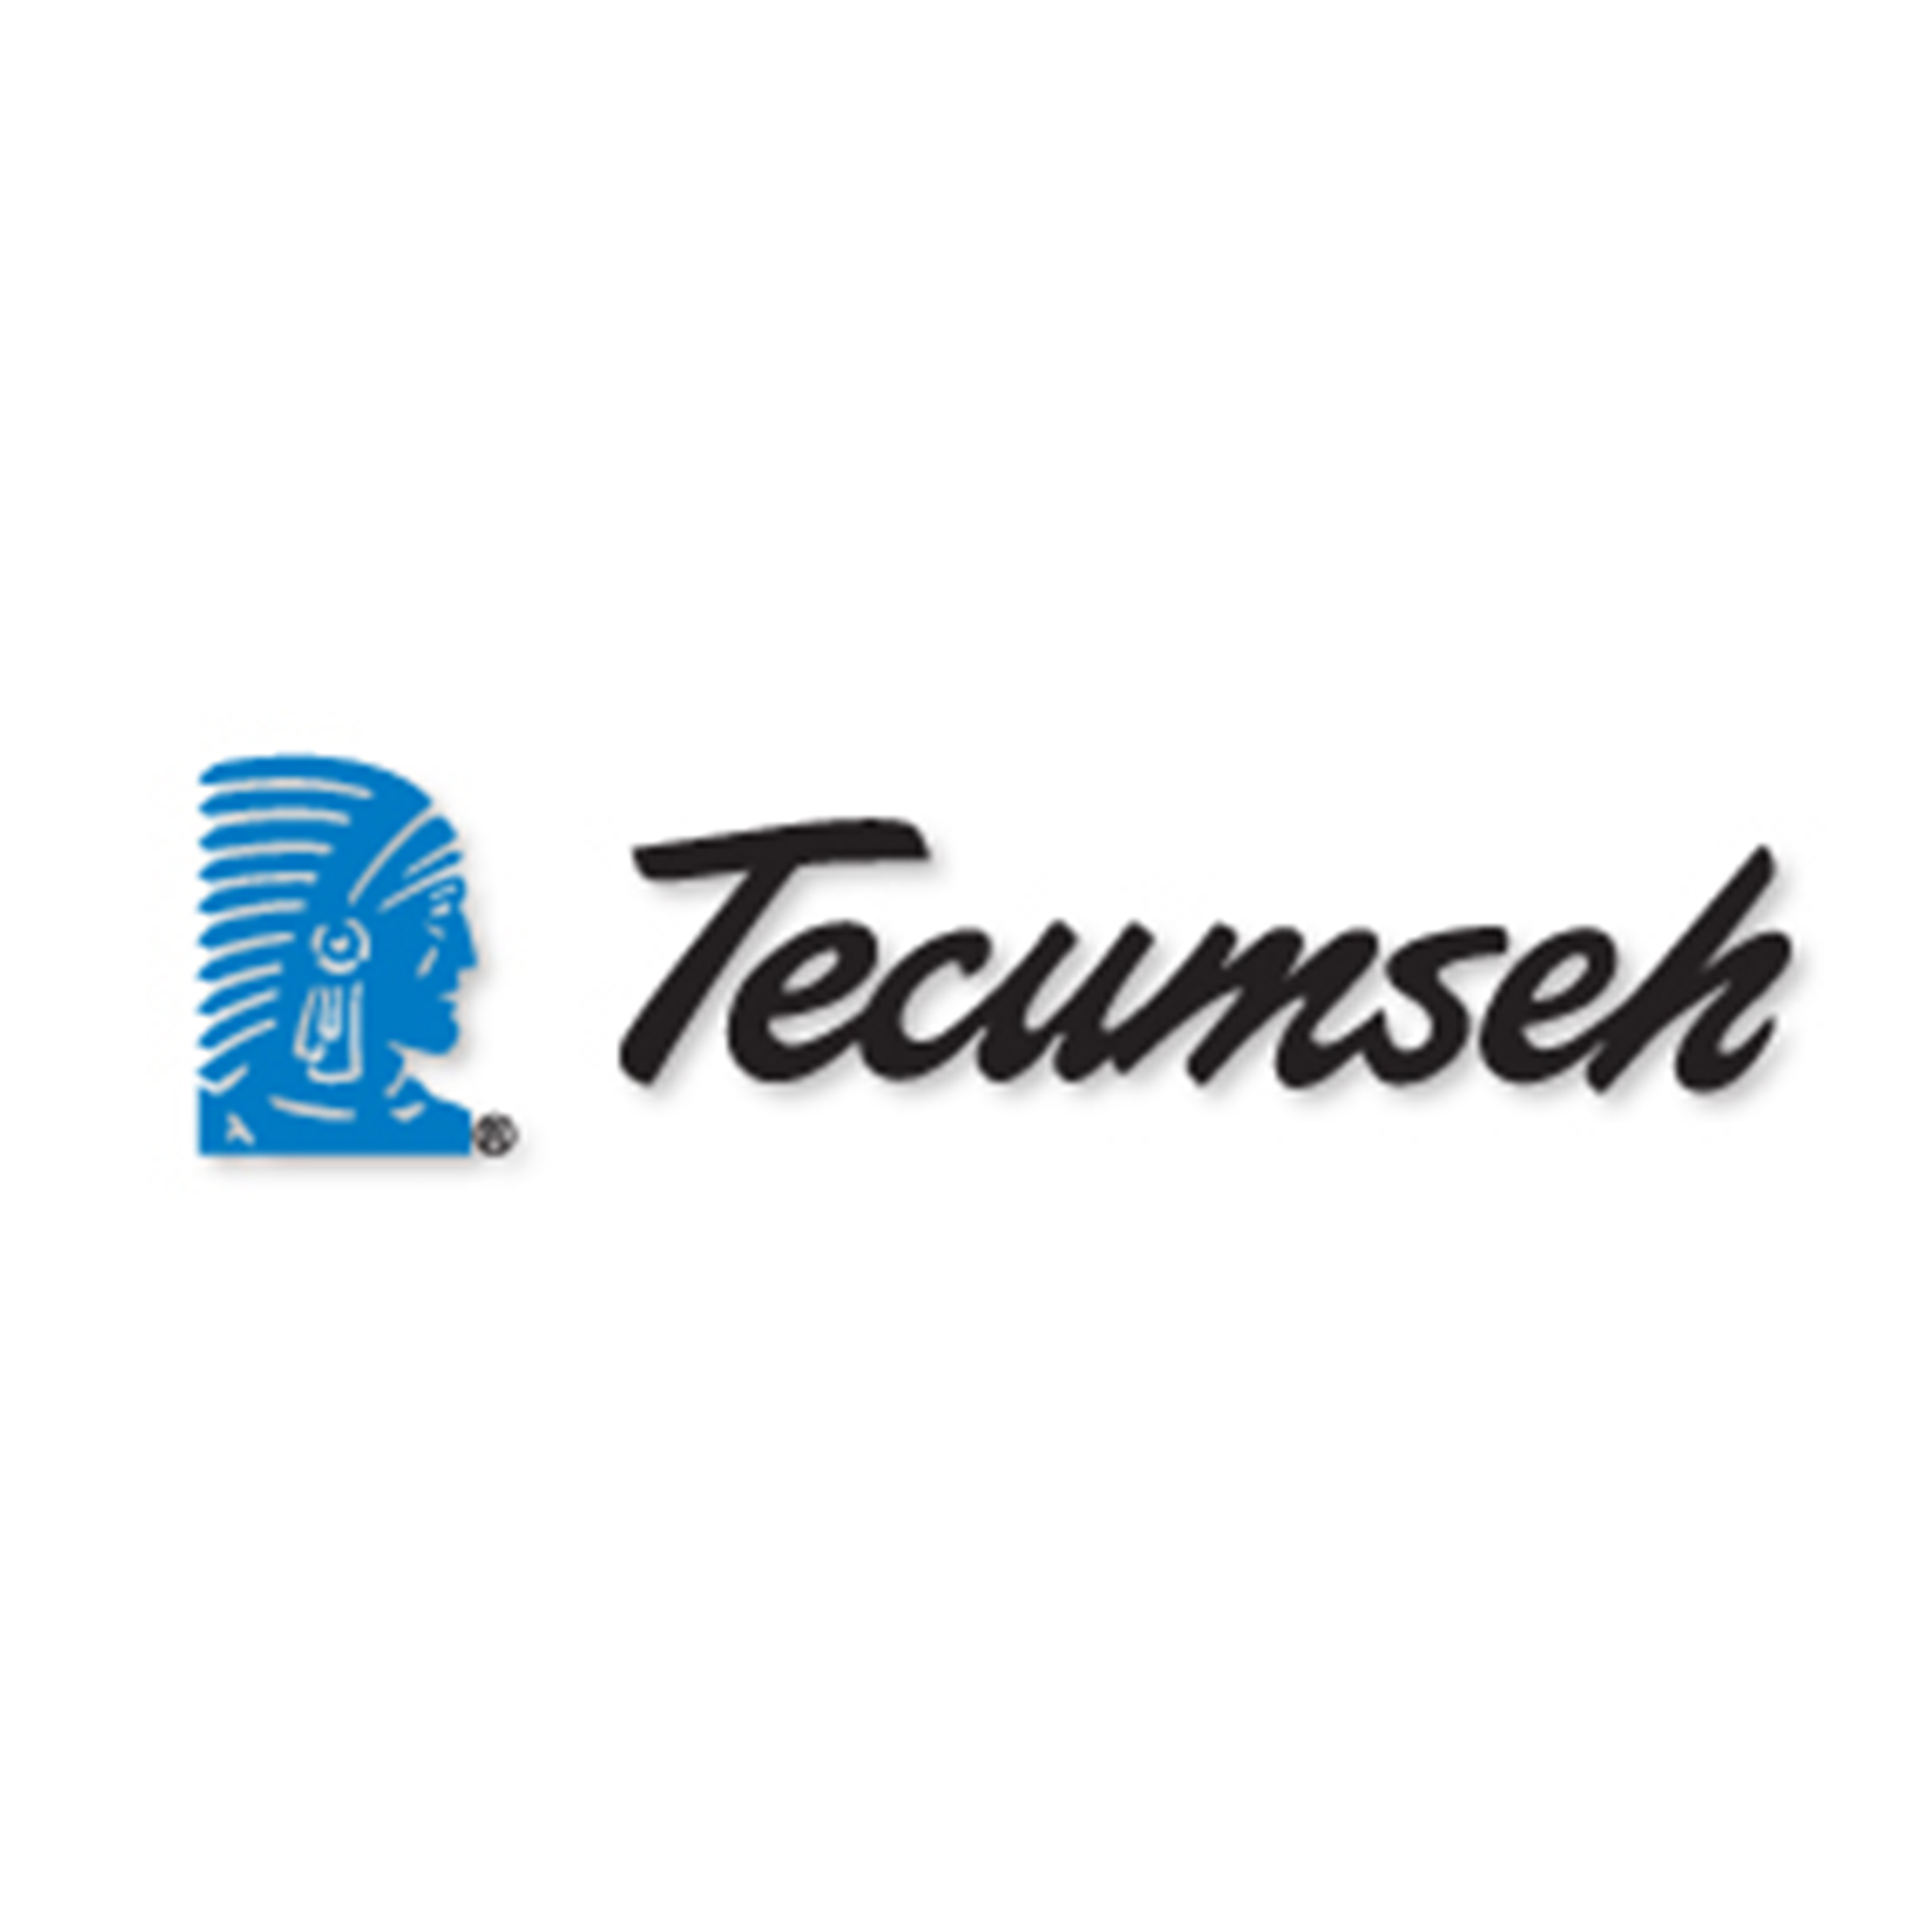 Tecumseh 590679 Retainer Genuine Original Equipment Manufacturer (OEM) Part